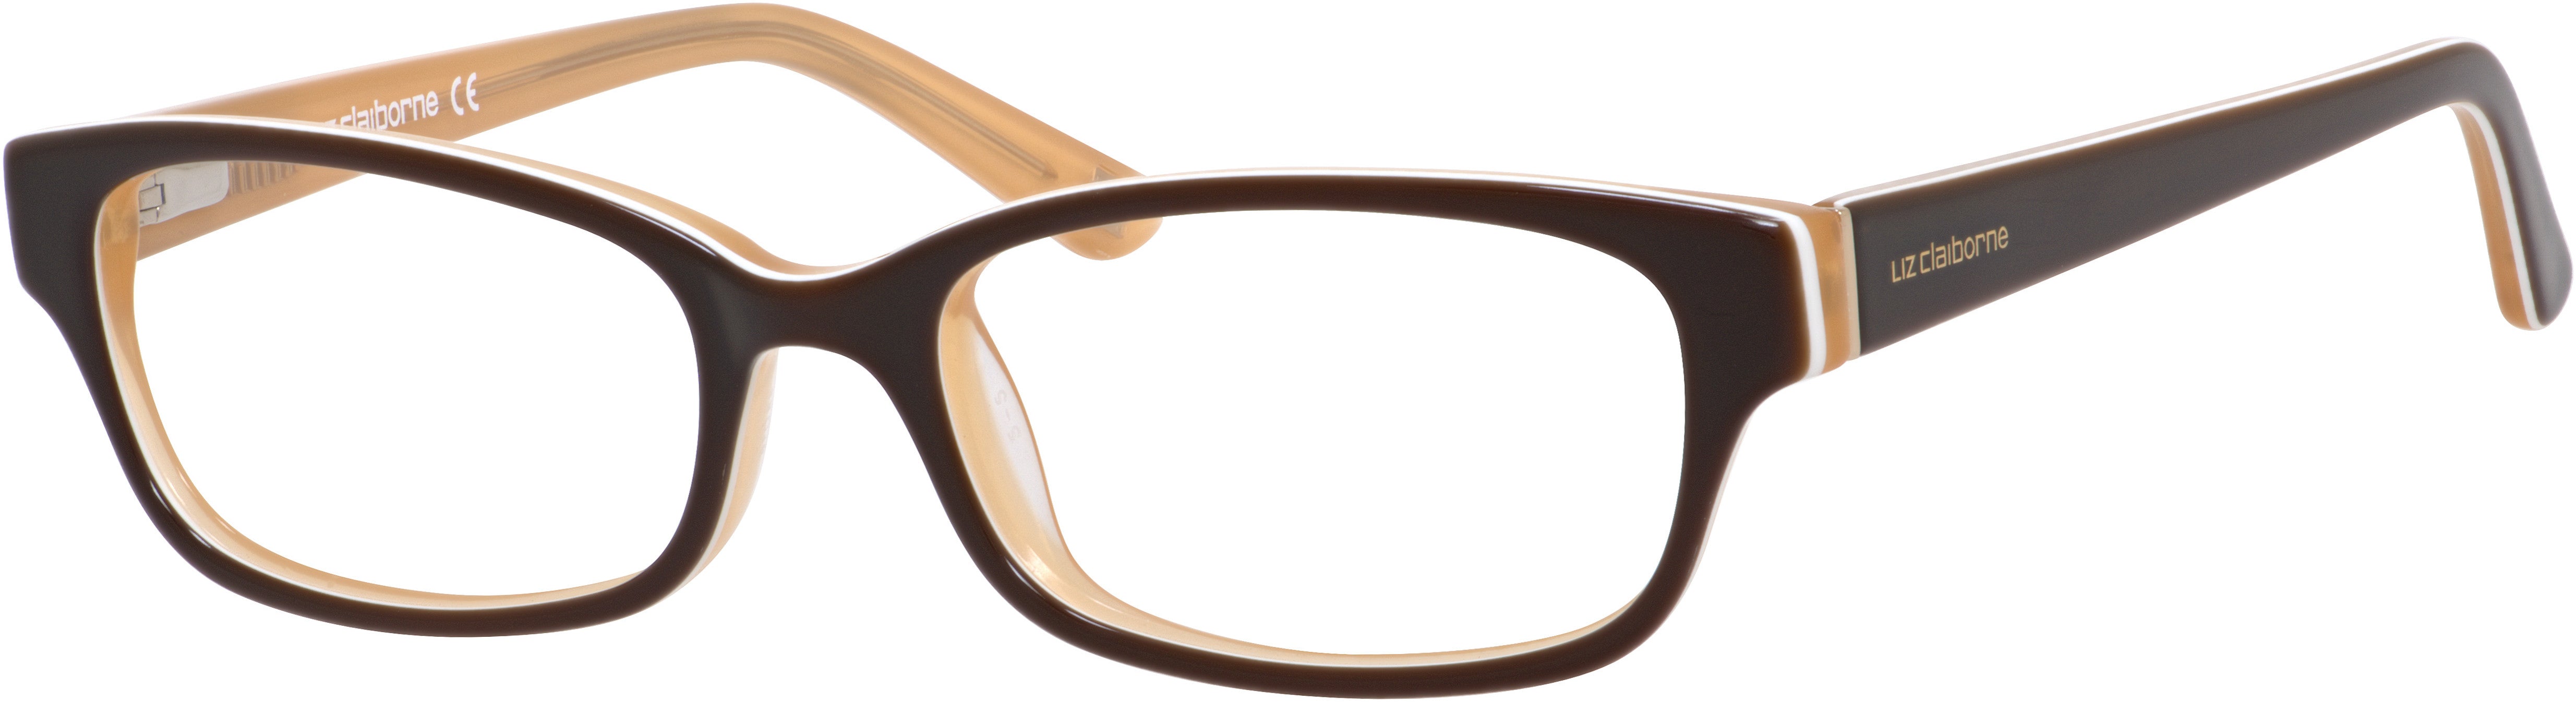  Liz Claiborne 429 Rectangular Eyeglasses 0EU3-0EU3  Brown Caramel (00 Demo Lens)